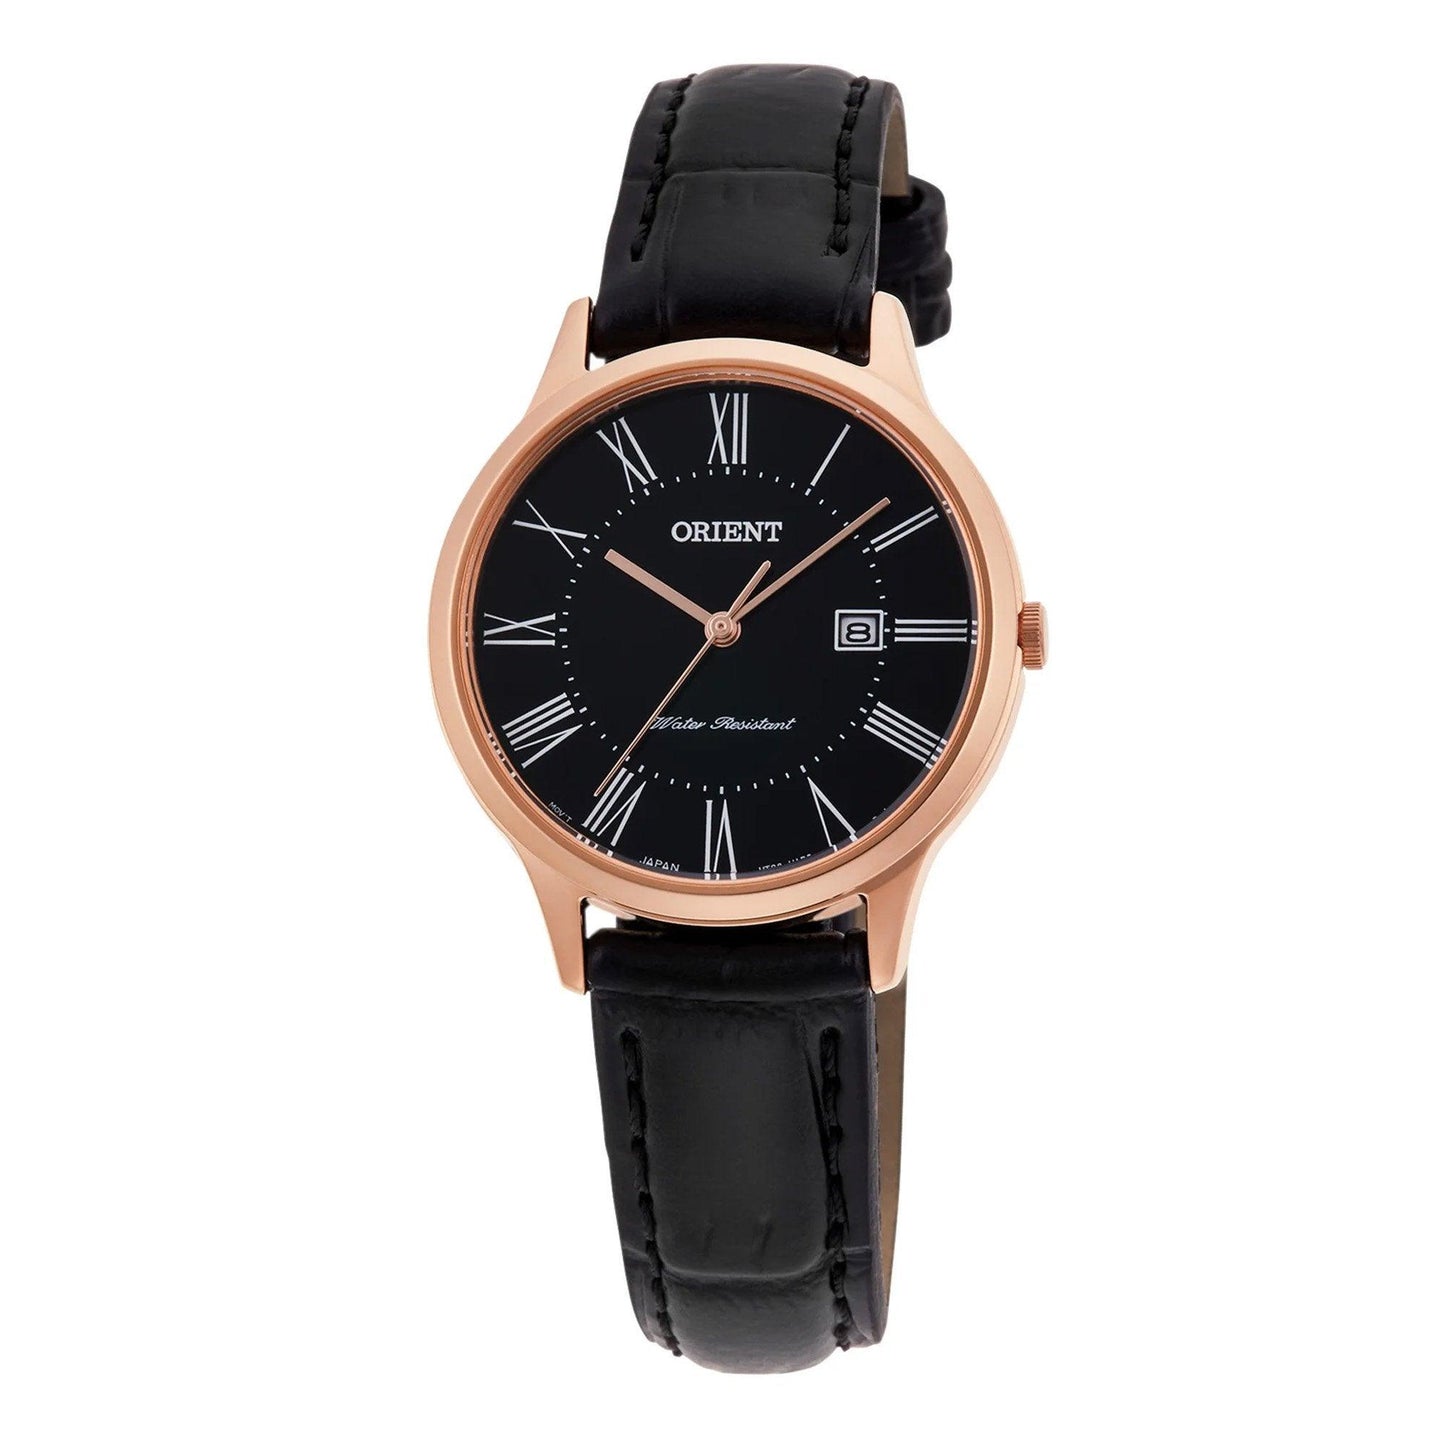 Orient Contemporary RF-QA0007B orologio donna al quarzo - Kechiq Concept Boutique